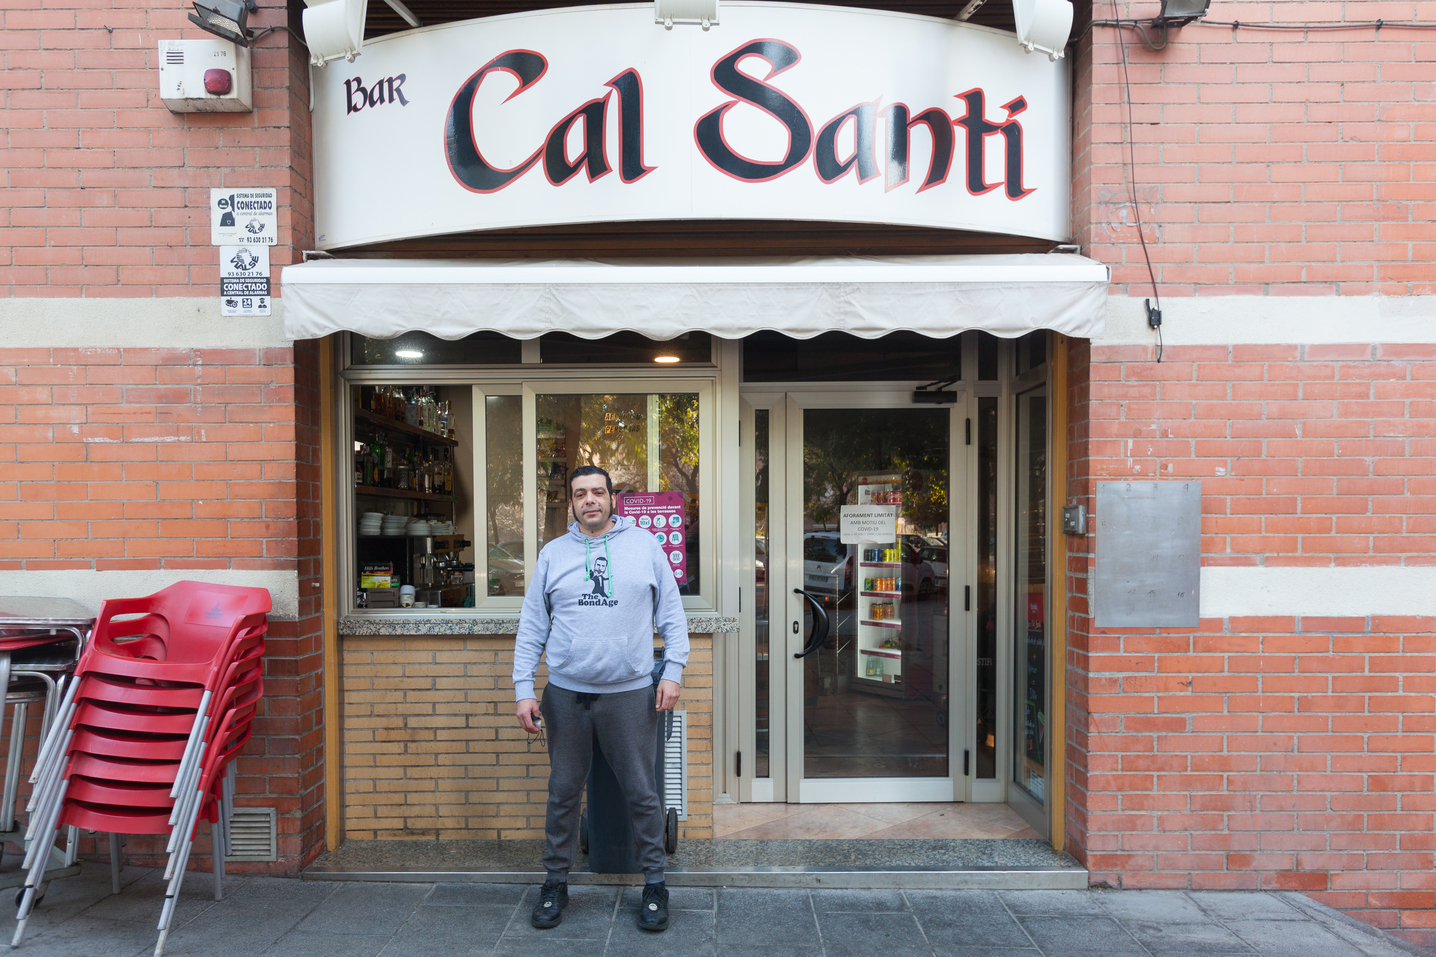 Bar Cal Santi 1